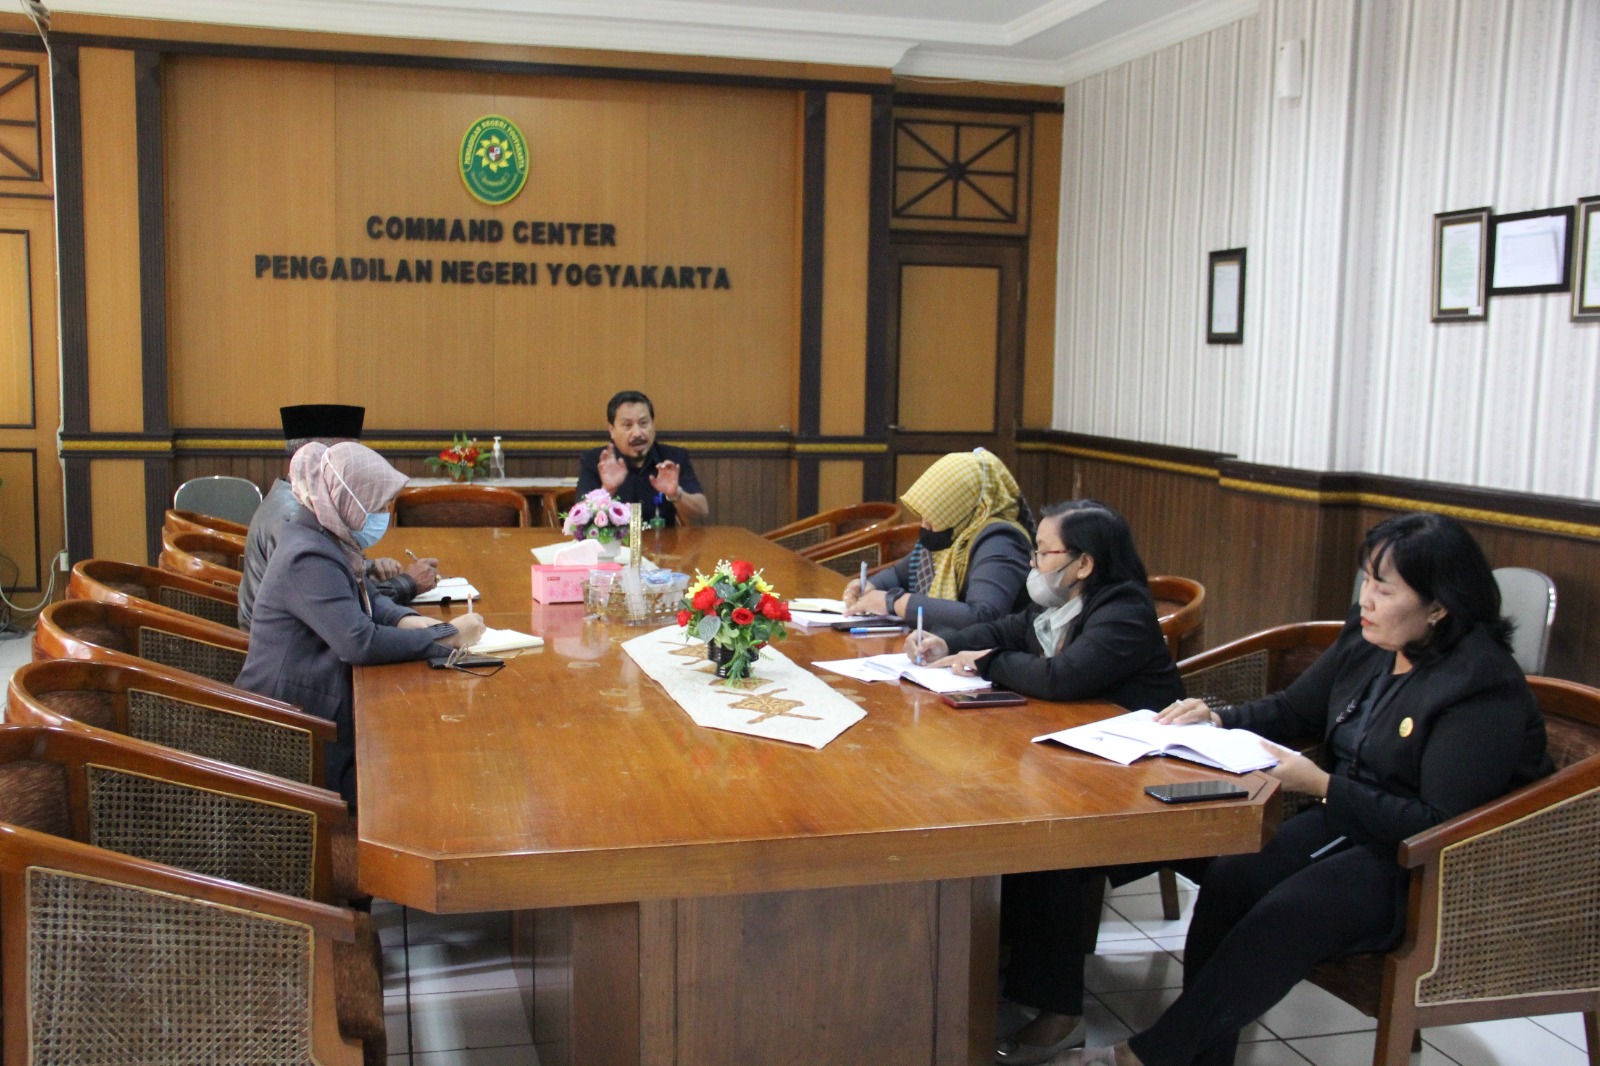 Rapat Koordinasi Terkait Pembinaan Pelaksanaan PERMA 7 dan Perma 8 Tahun 2022 serta SIPP oleh Pengadilan Tinggi Yogyakarta